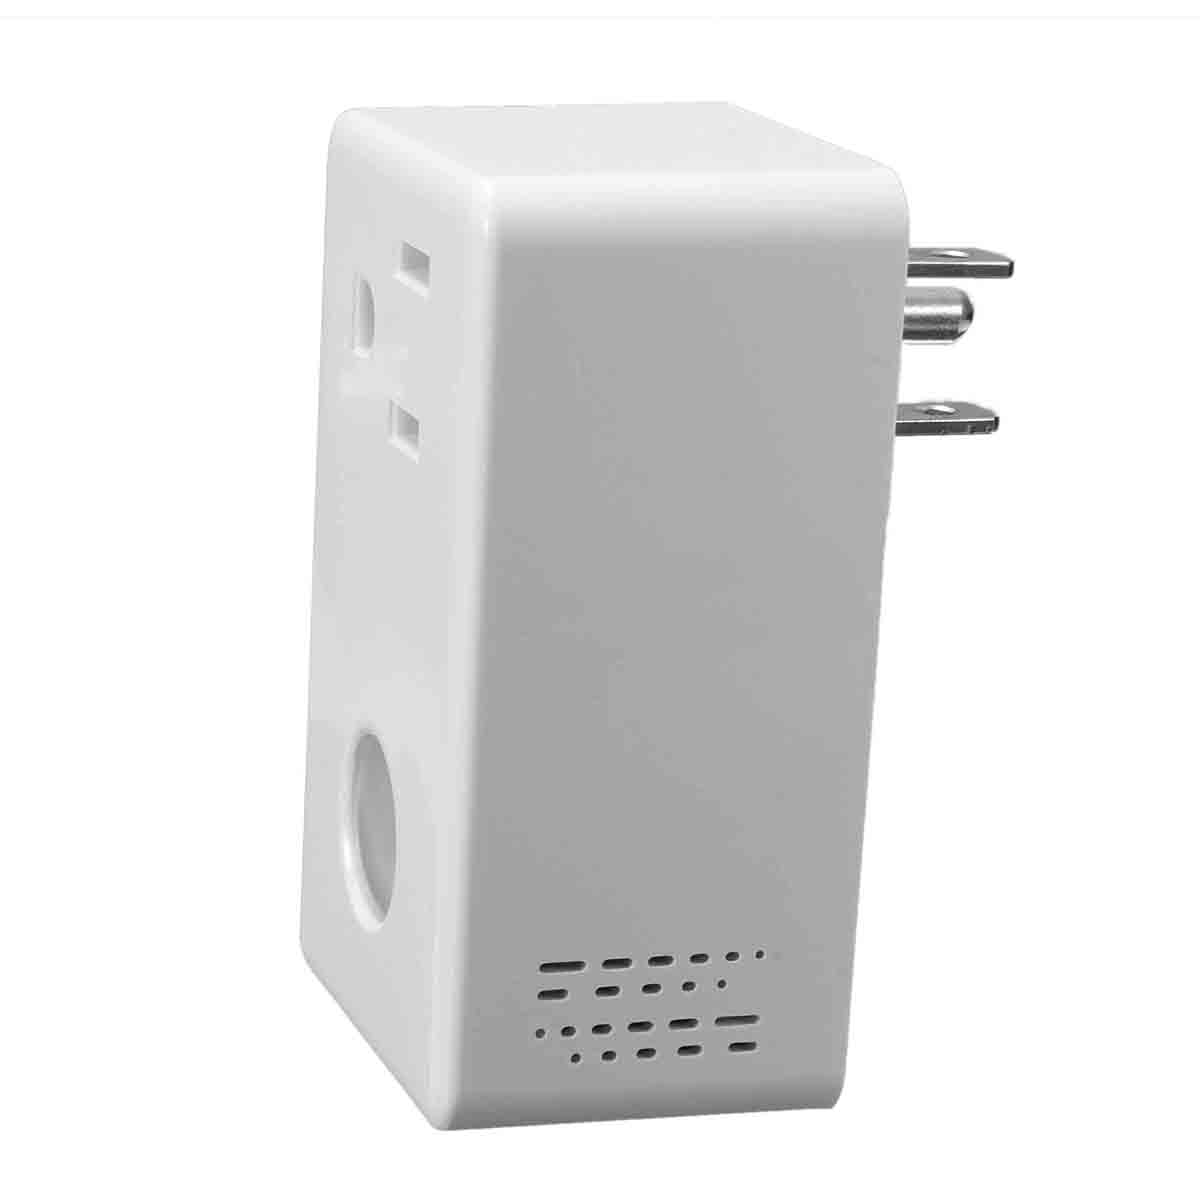 Broadlink Wireless Remote Control EU US Power Smart Wifi Socket With Timer Works with Alexa 14